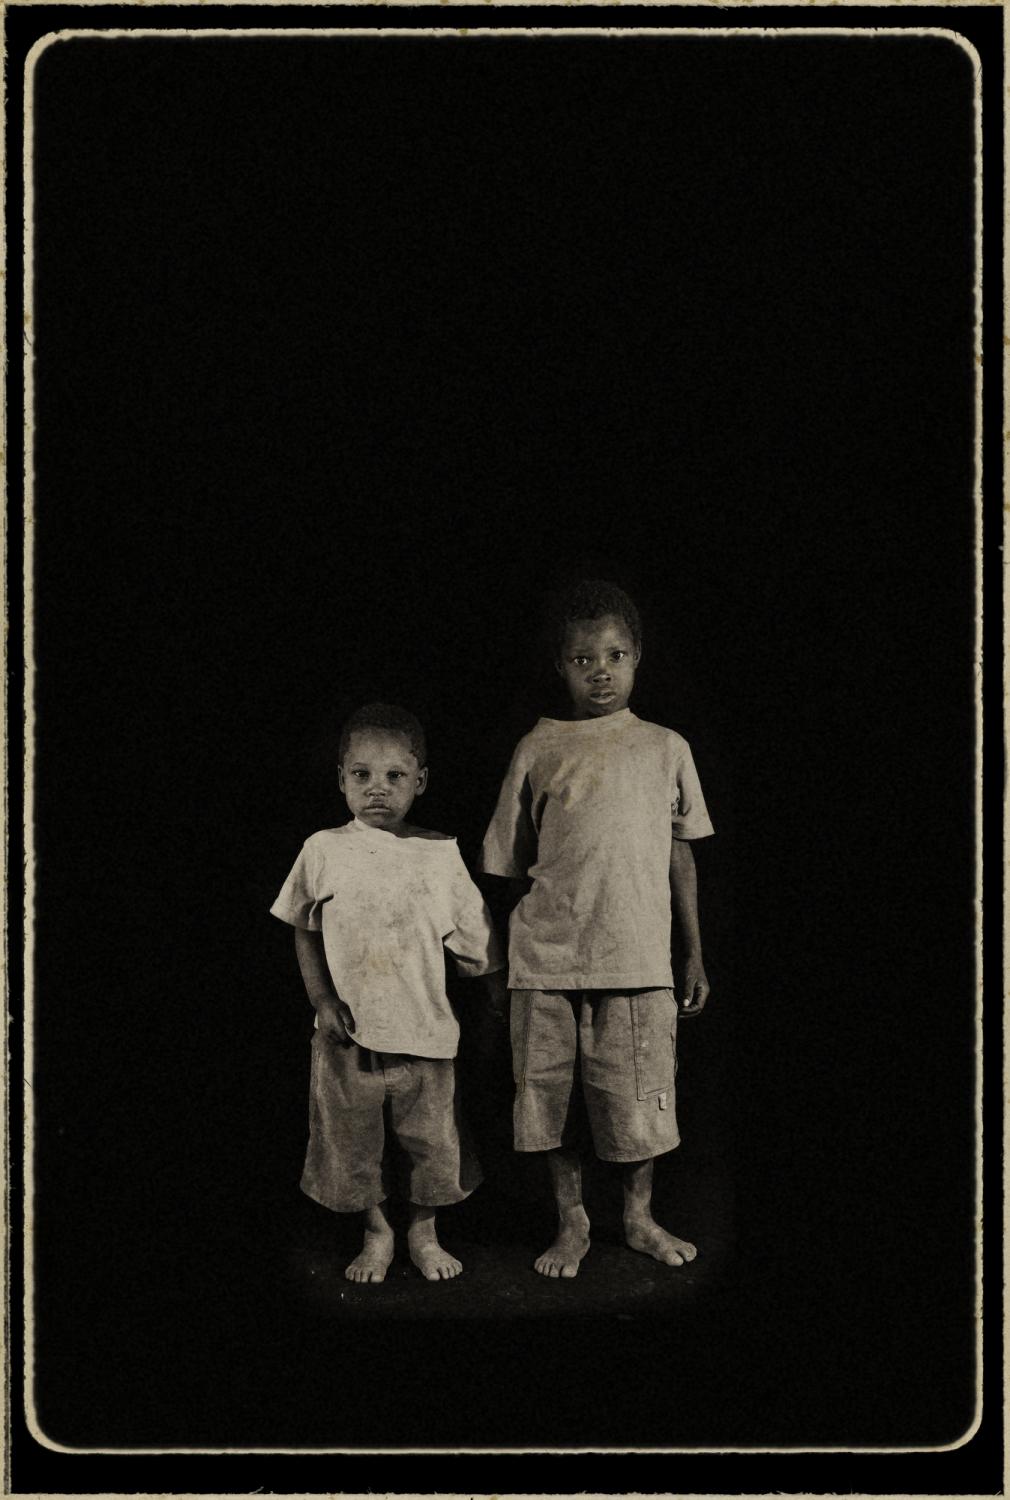 Orphans/ portraits - Hosea, Swaziland.
¨Orphans¨
Portrait of two...